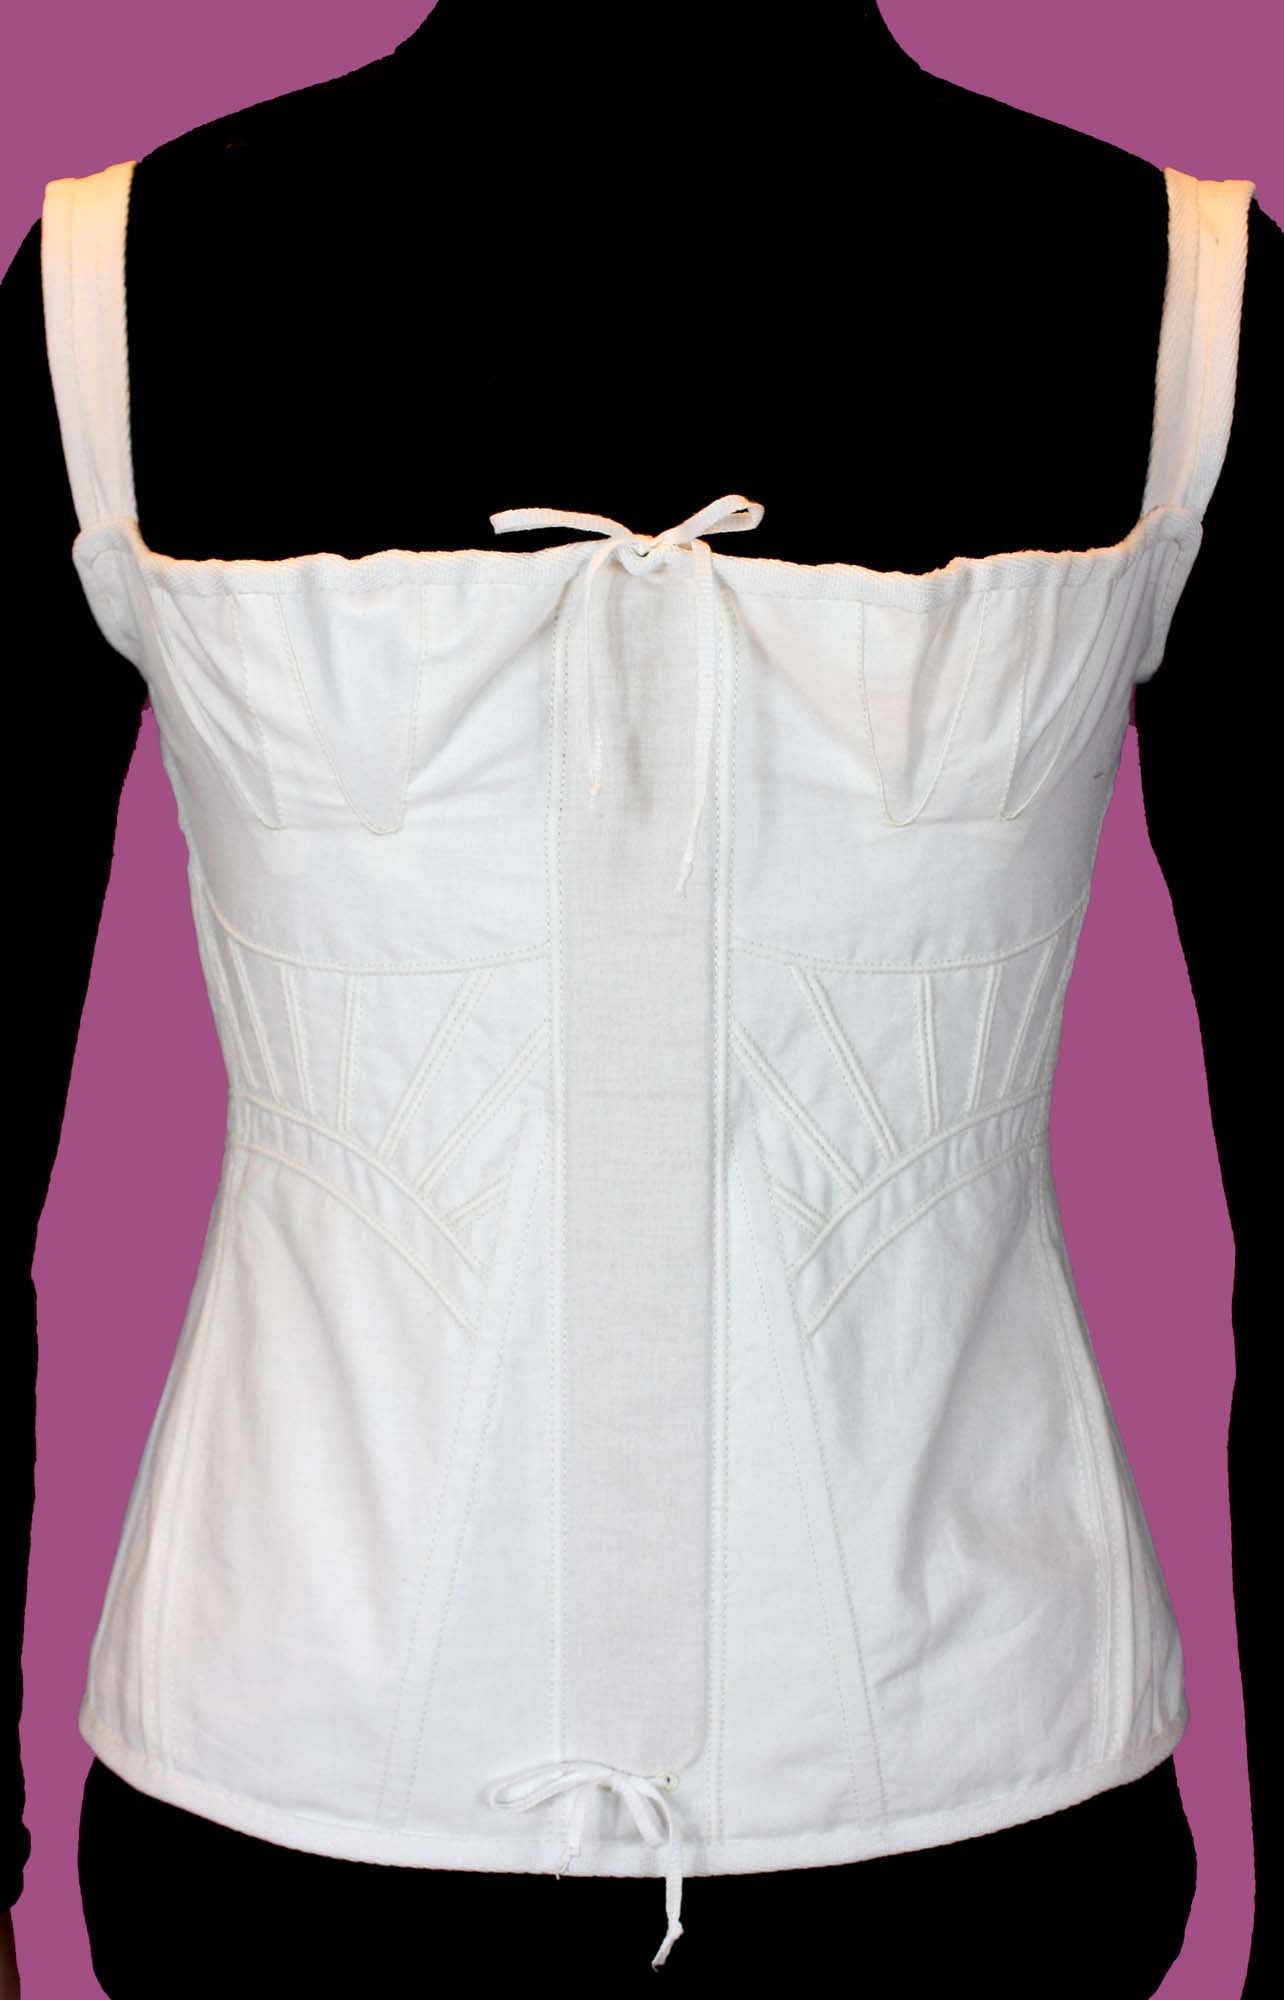 #0417 1830s Biedermeier Corset and Underwear Sewing Pattern Size US 8-30 (EU 34-56) paper pattern